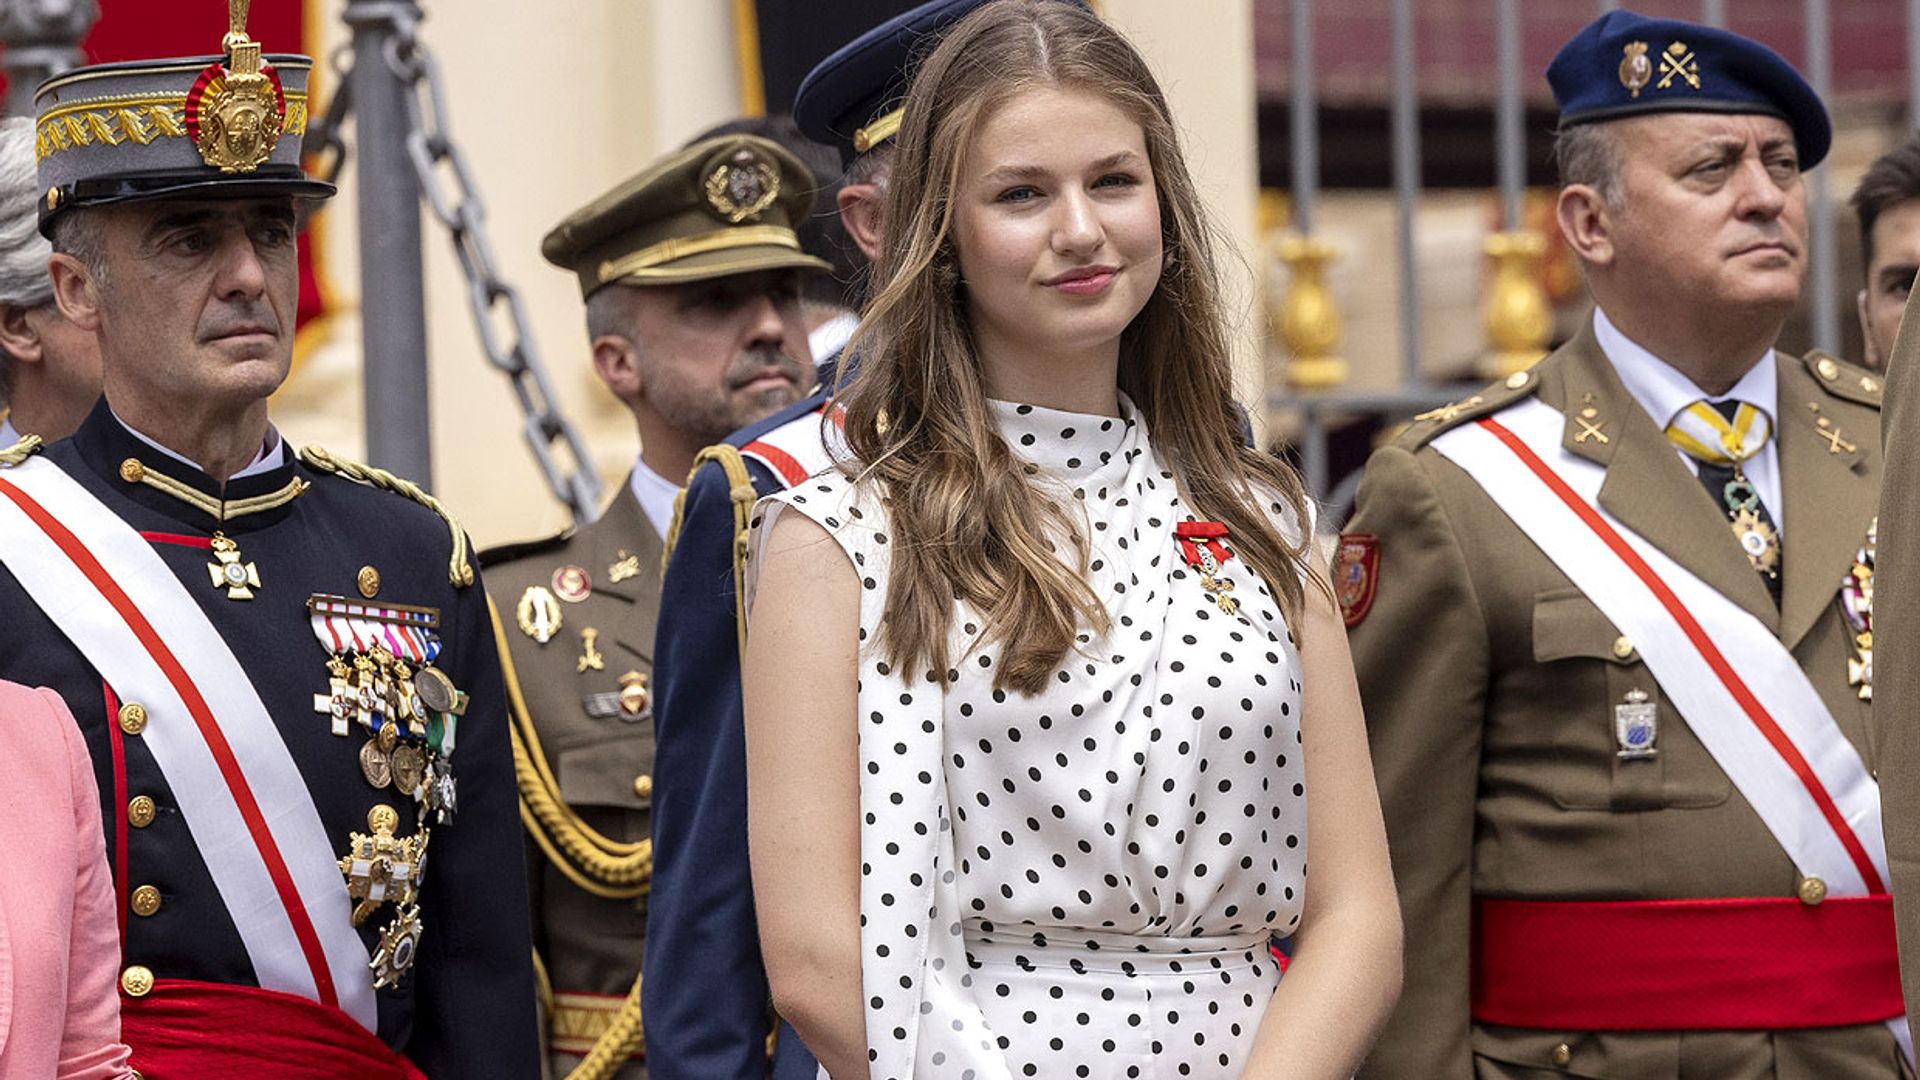 La princesa Leonor ingresa en la Academia Militar de Zaragoza: así será su día a día como dama cadete